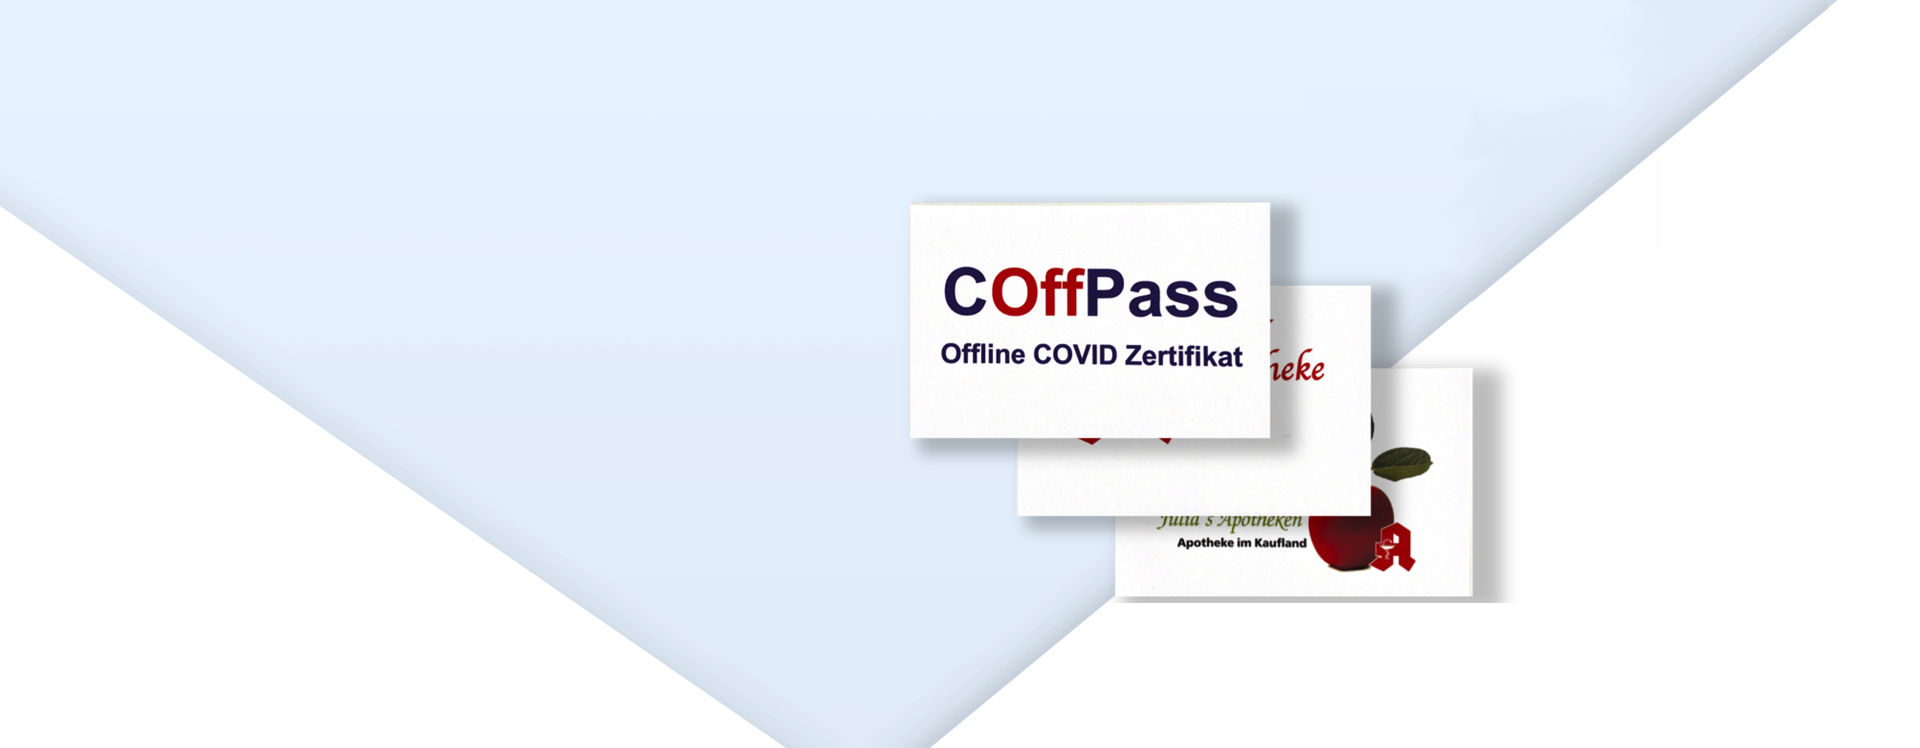 Das Offline COVID Zertifikat, individuell aus Ihrer Apotheke